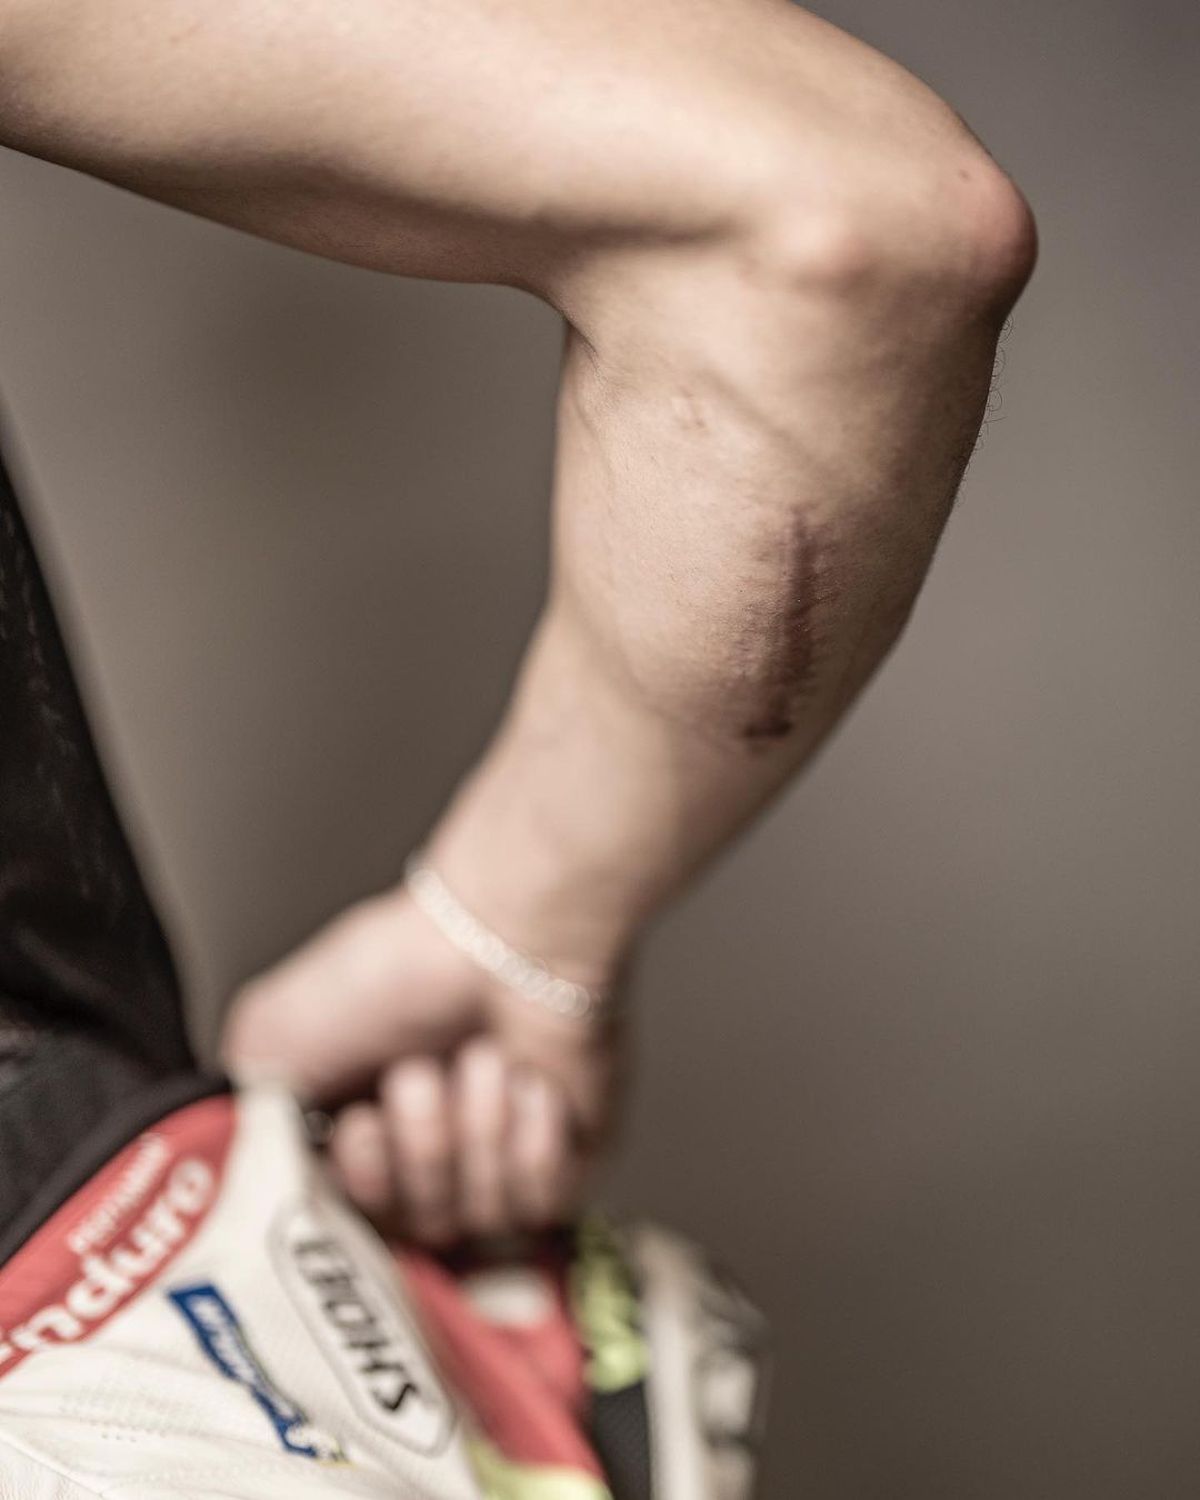 Piloții din MotoGP și-au arătat cicatricile și tatuajele